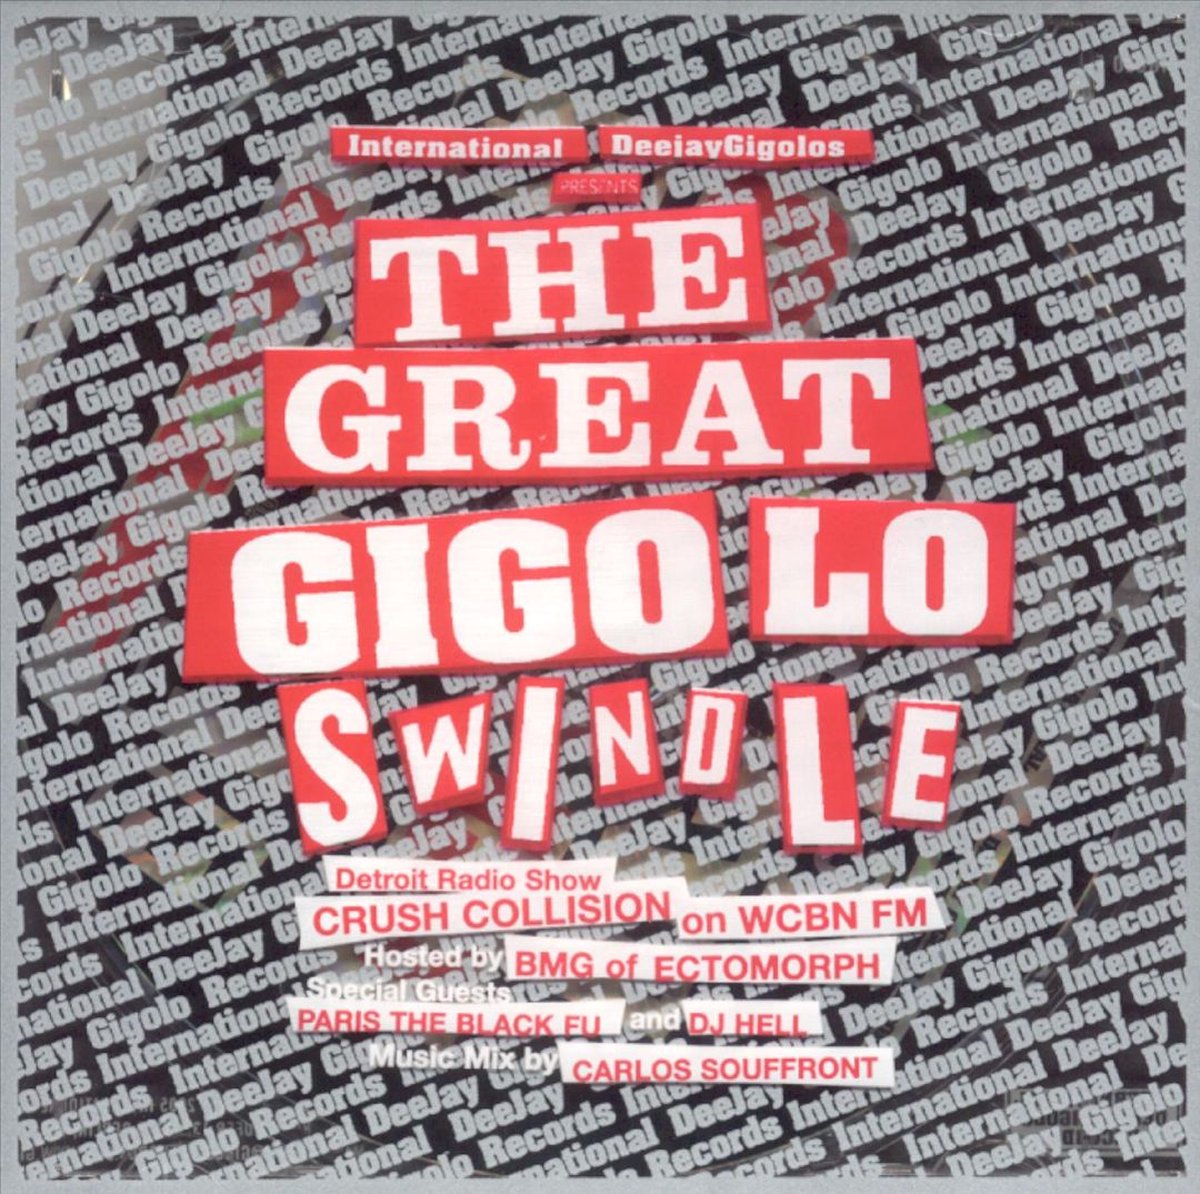 Great Gigolo Swindle - various artists